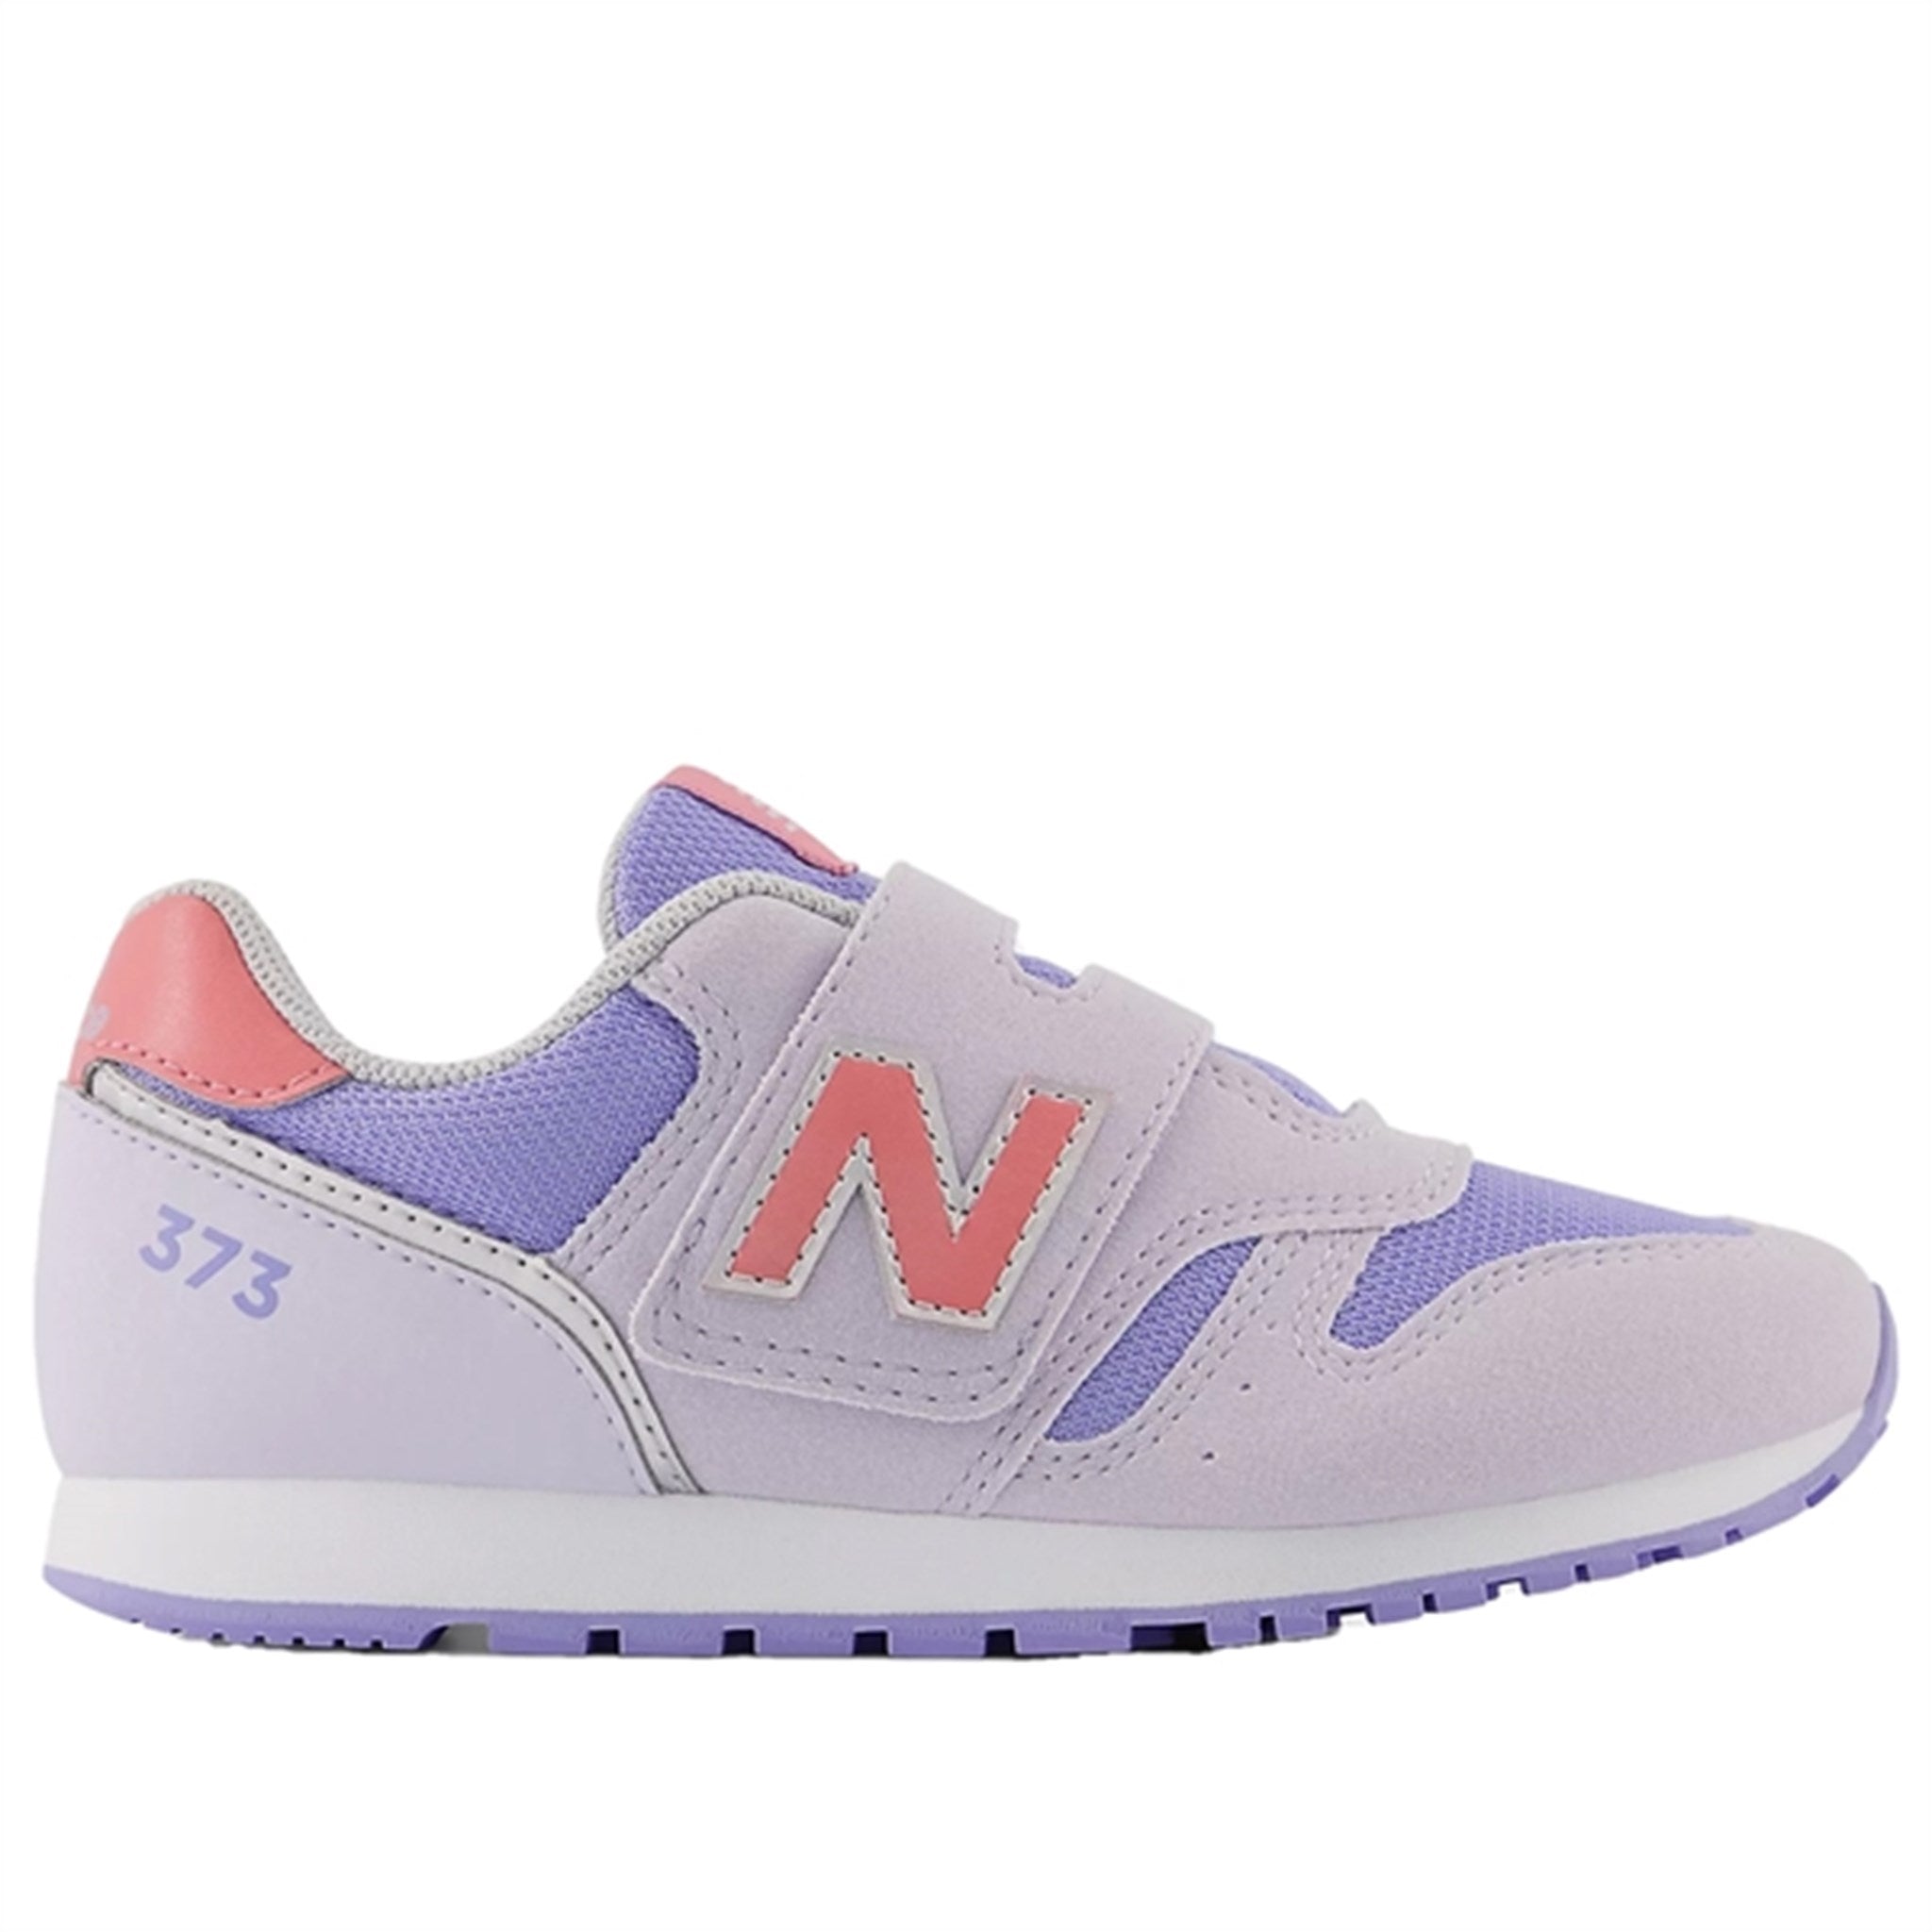 New Balance 373 Grey Lilac/Natural Pink